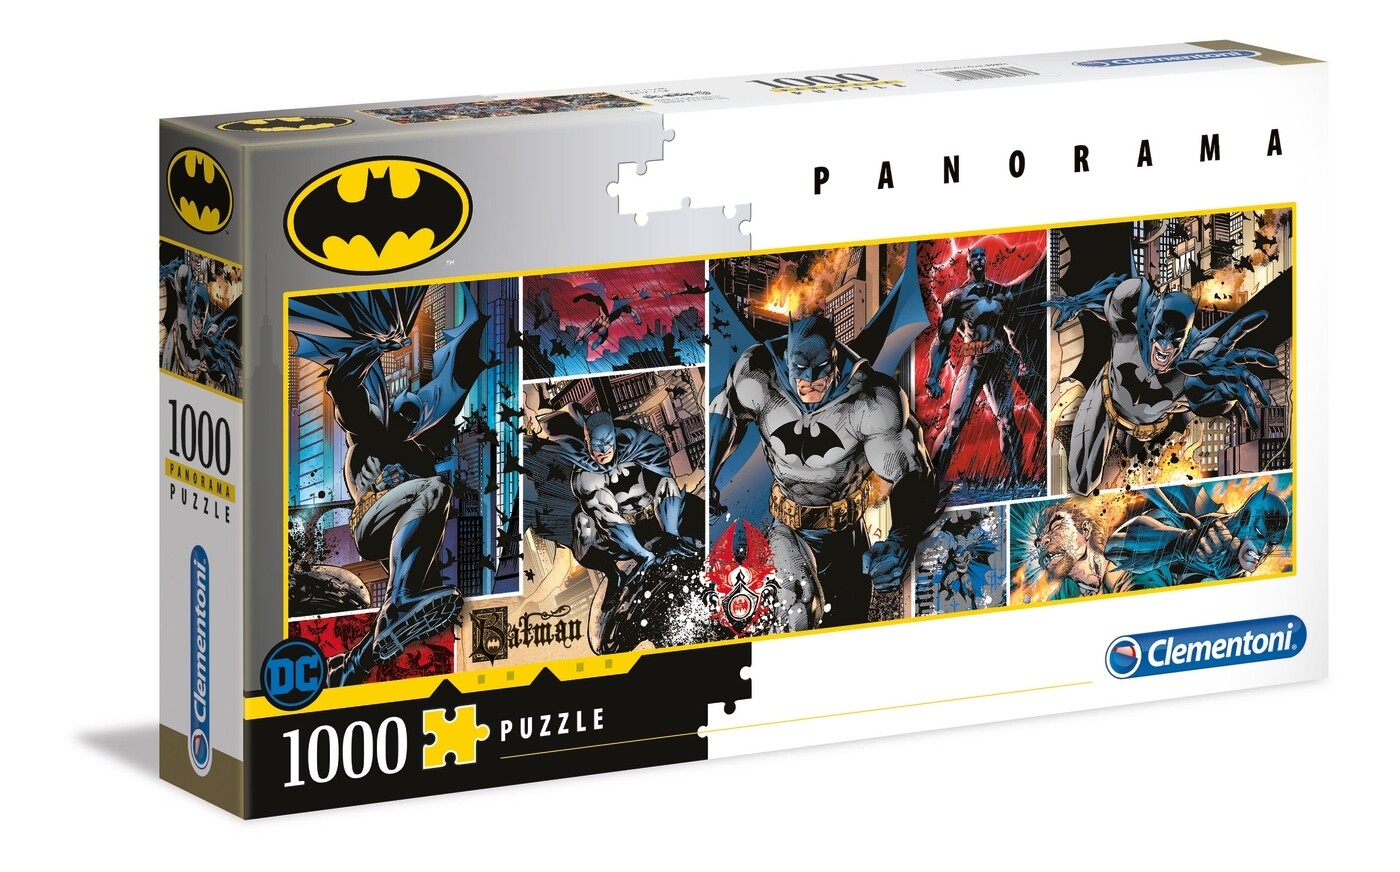 Clementoni Puzzle - Batman Panorama (1000 peças)